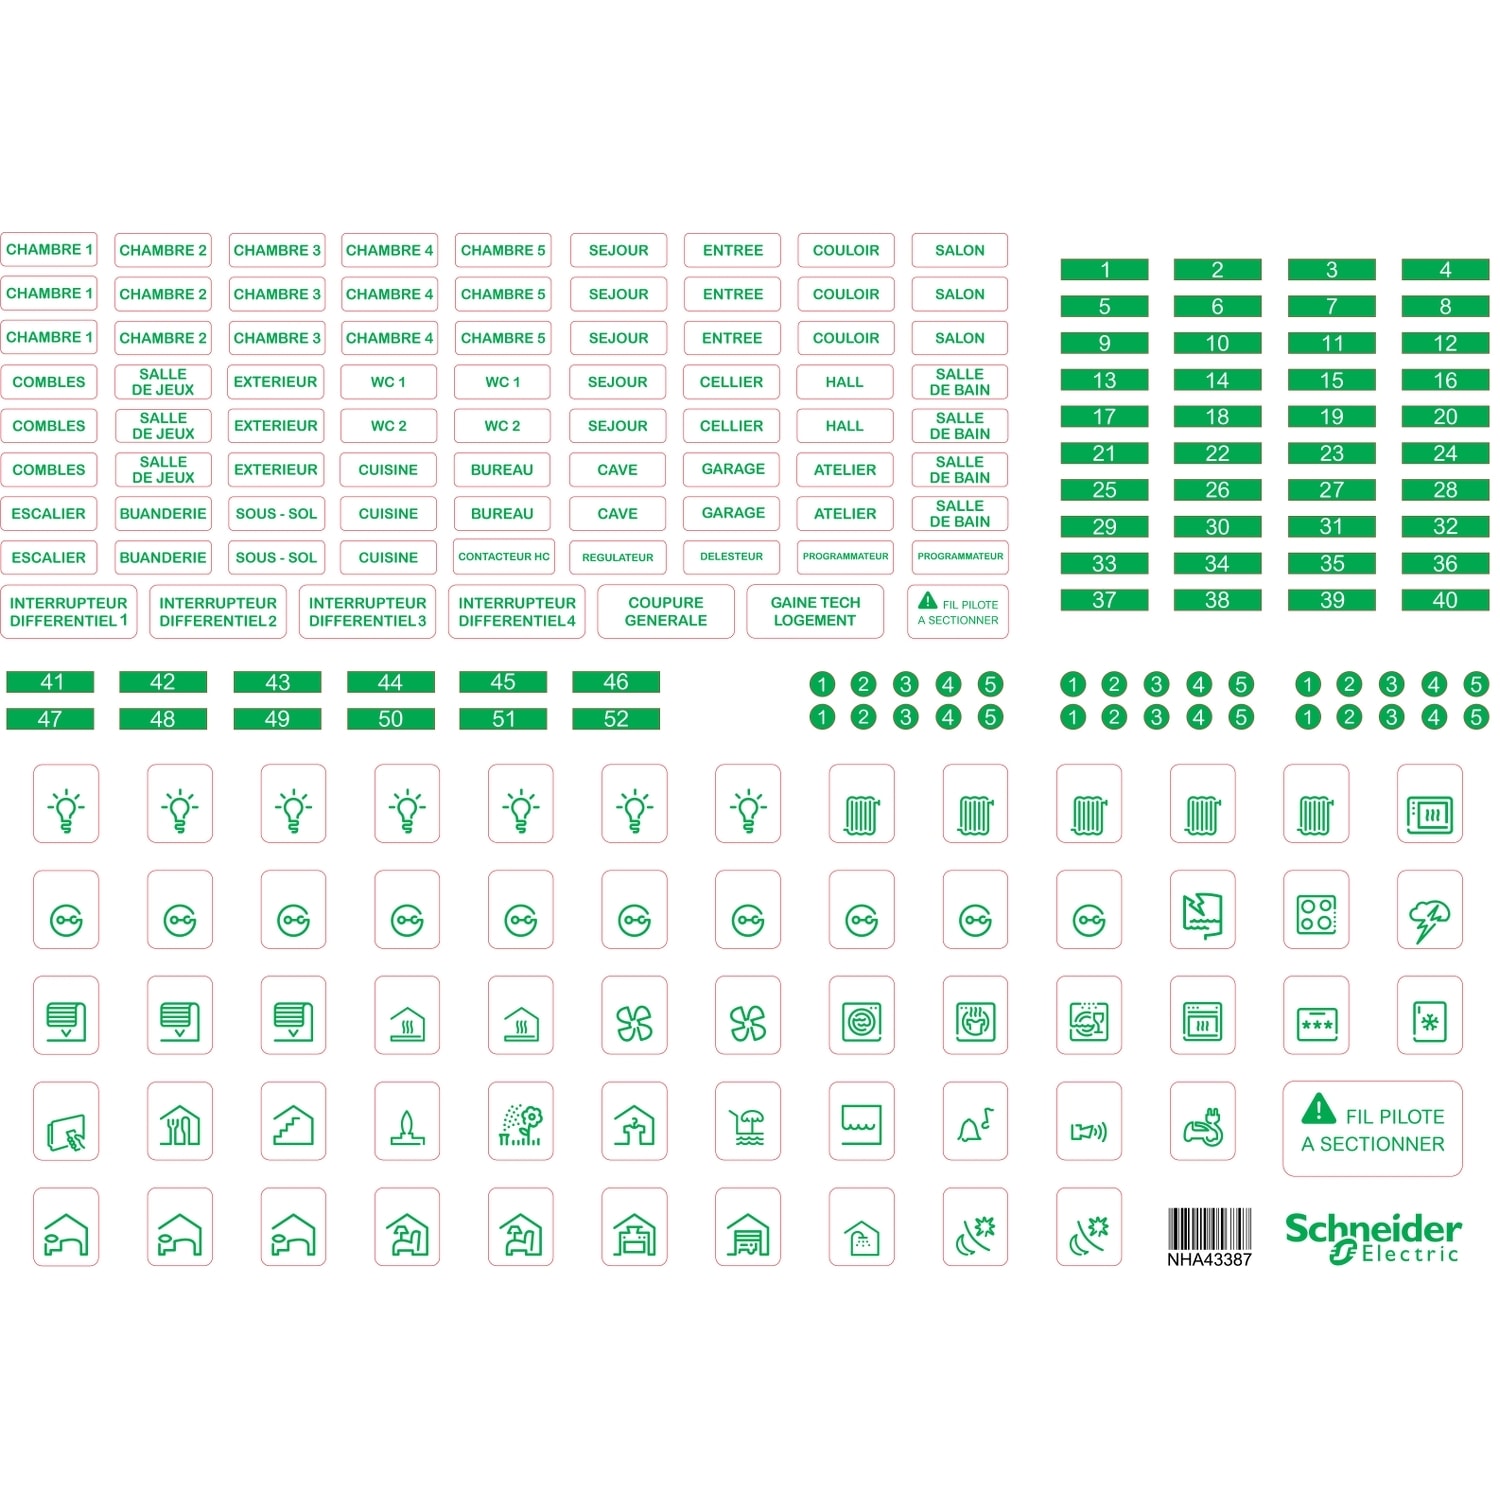 Schneider Electric - Resi9 - lot de 10 feuilles A4 de symboles autocollants en plastique transparent